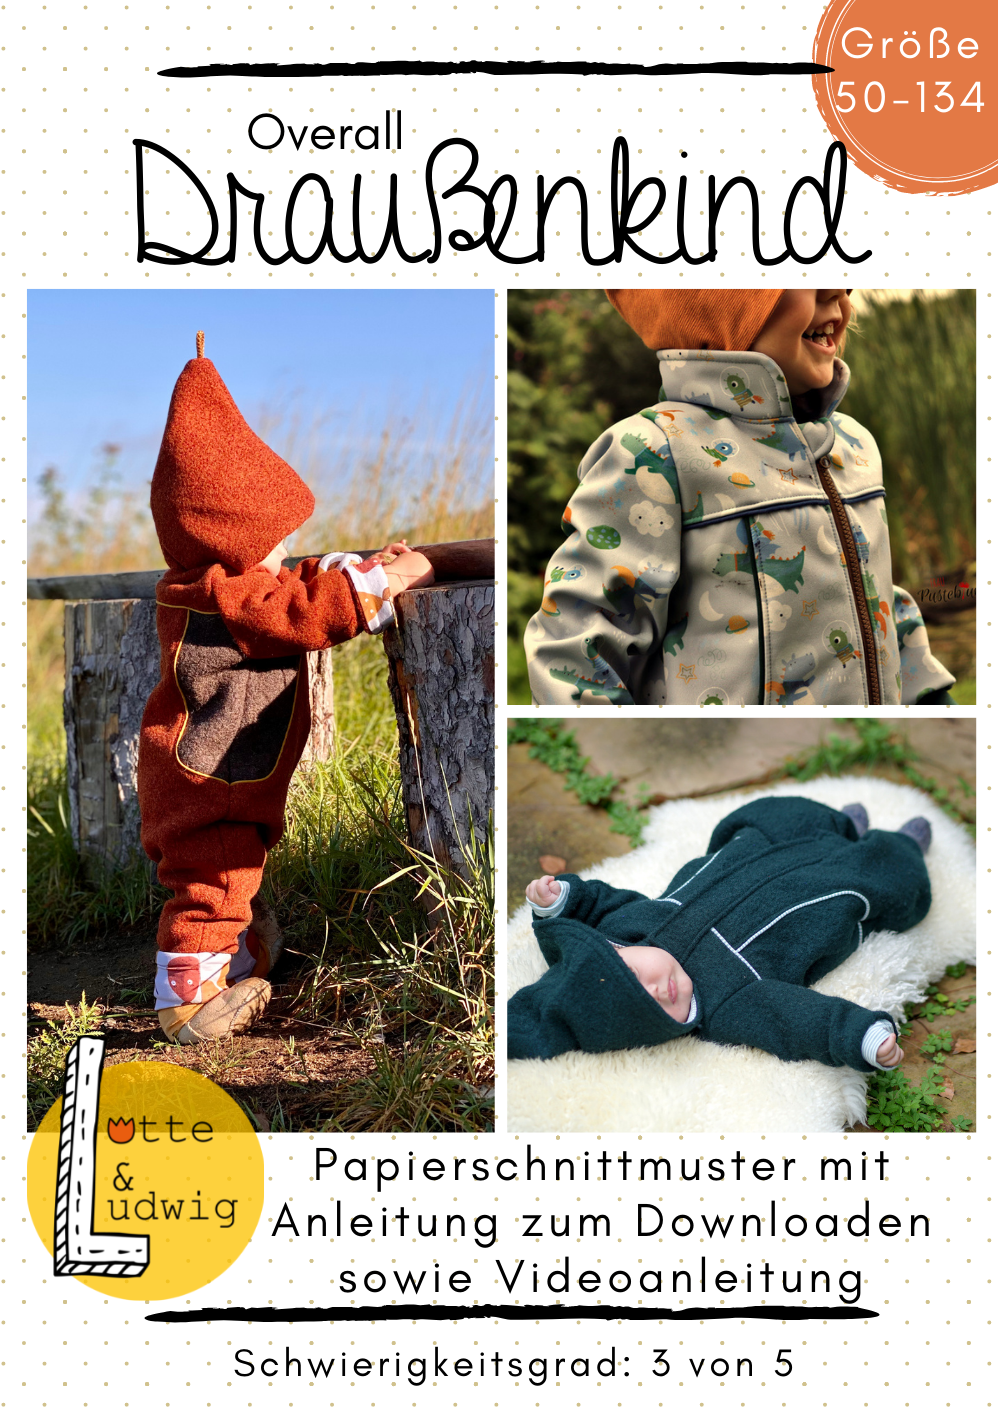 Papierschnittmuster Overall "Draußenkind" von Lotte & Ludwig